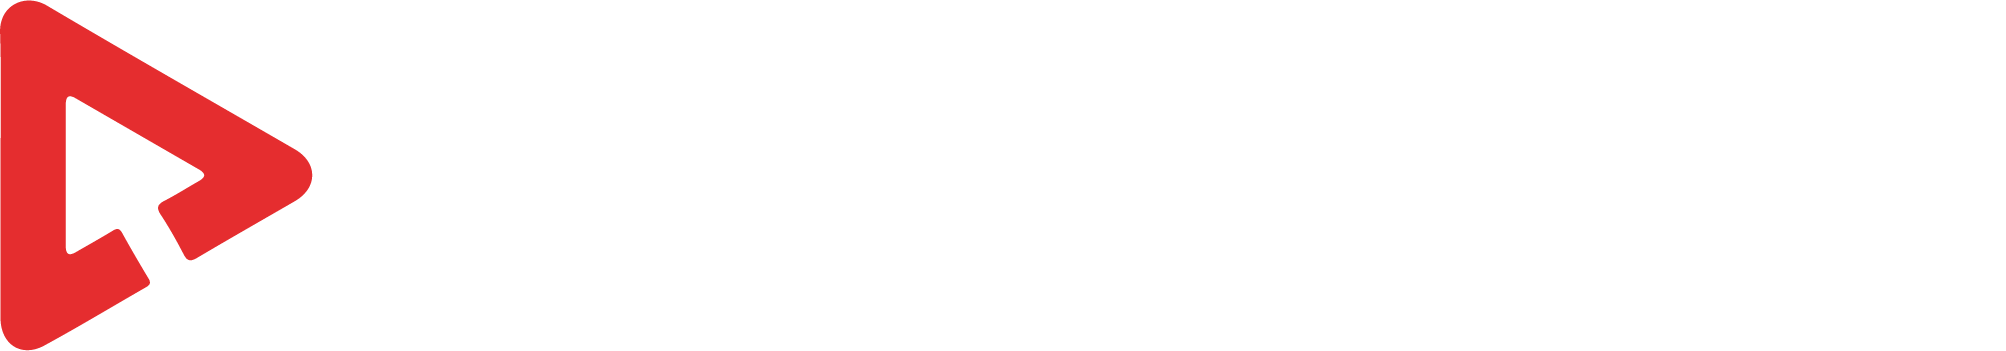 1 Click Studio